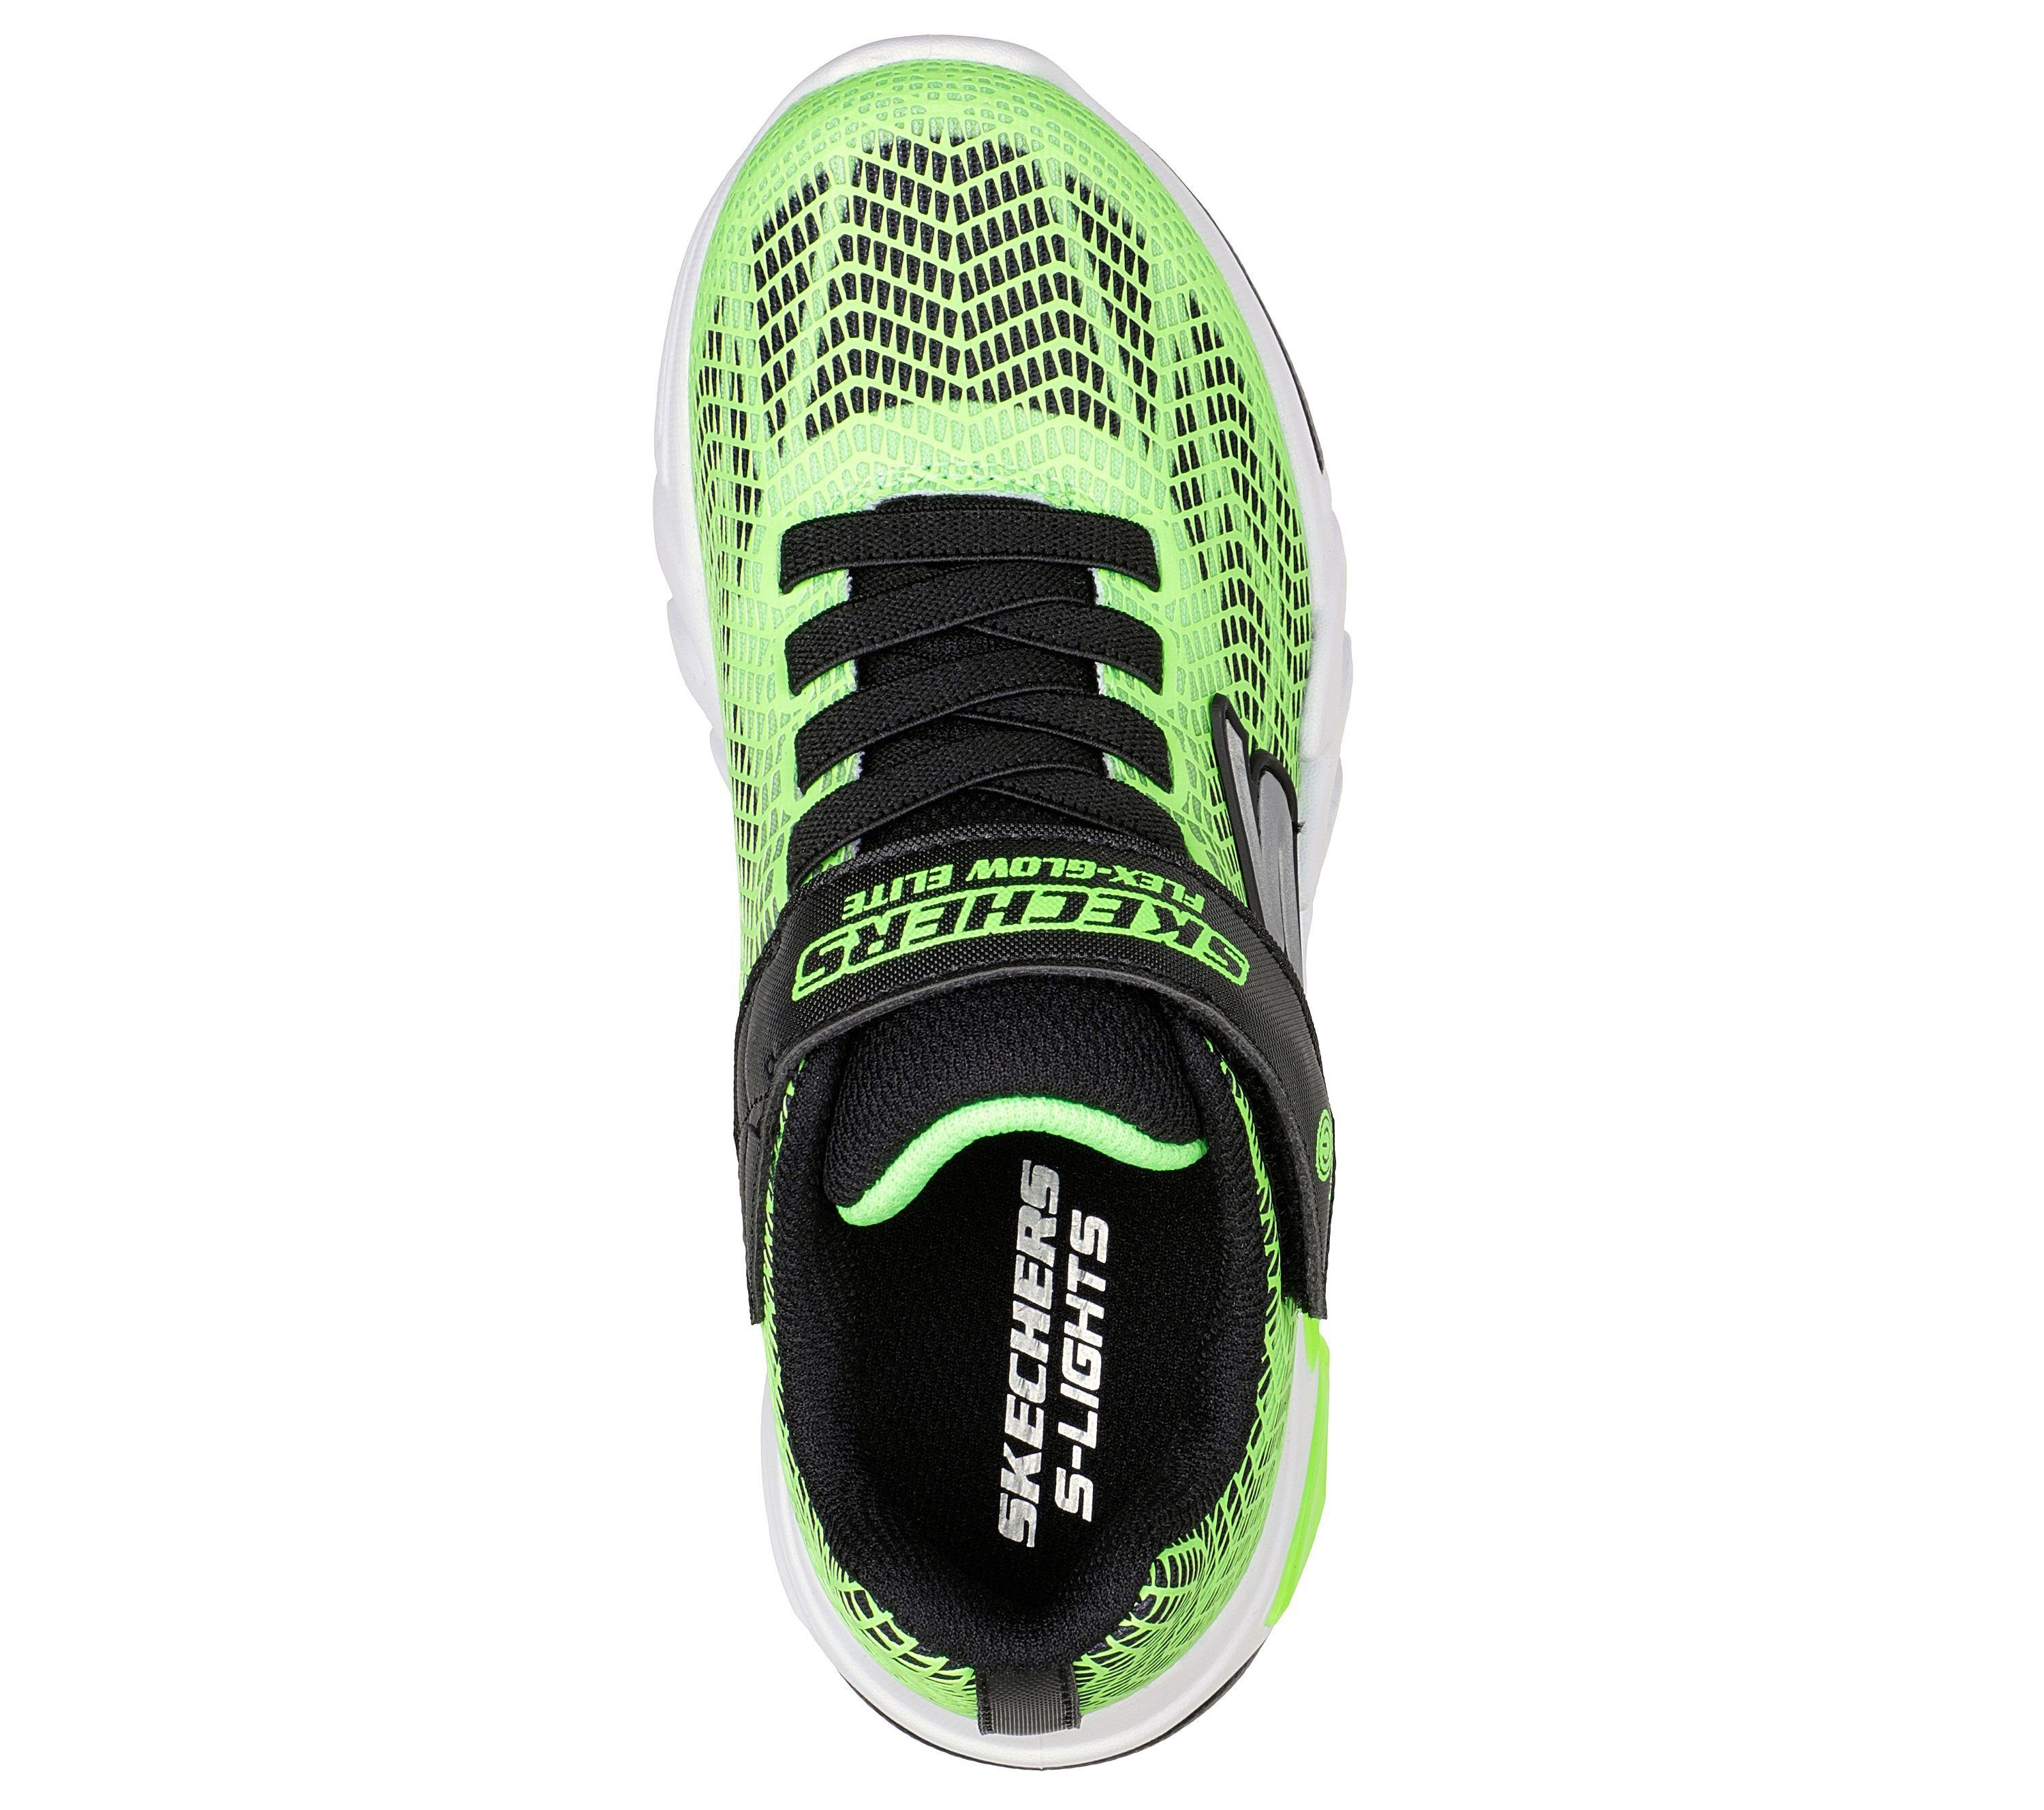 / Schwarz (20203018) Vorlo Lime Sneaker Skechers